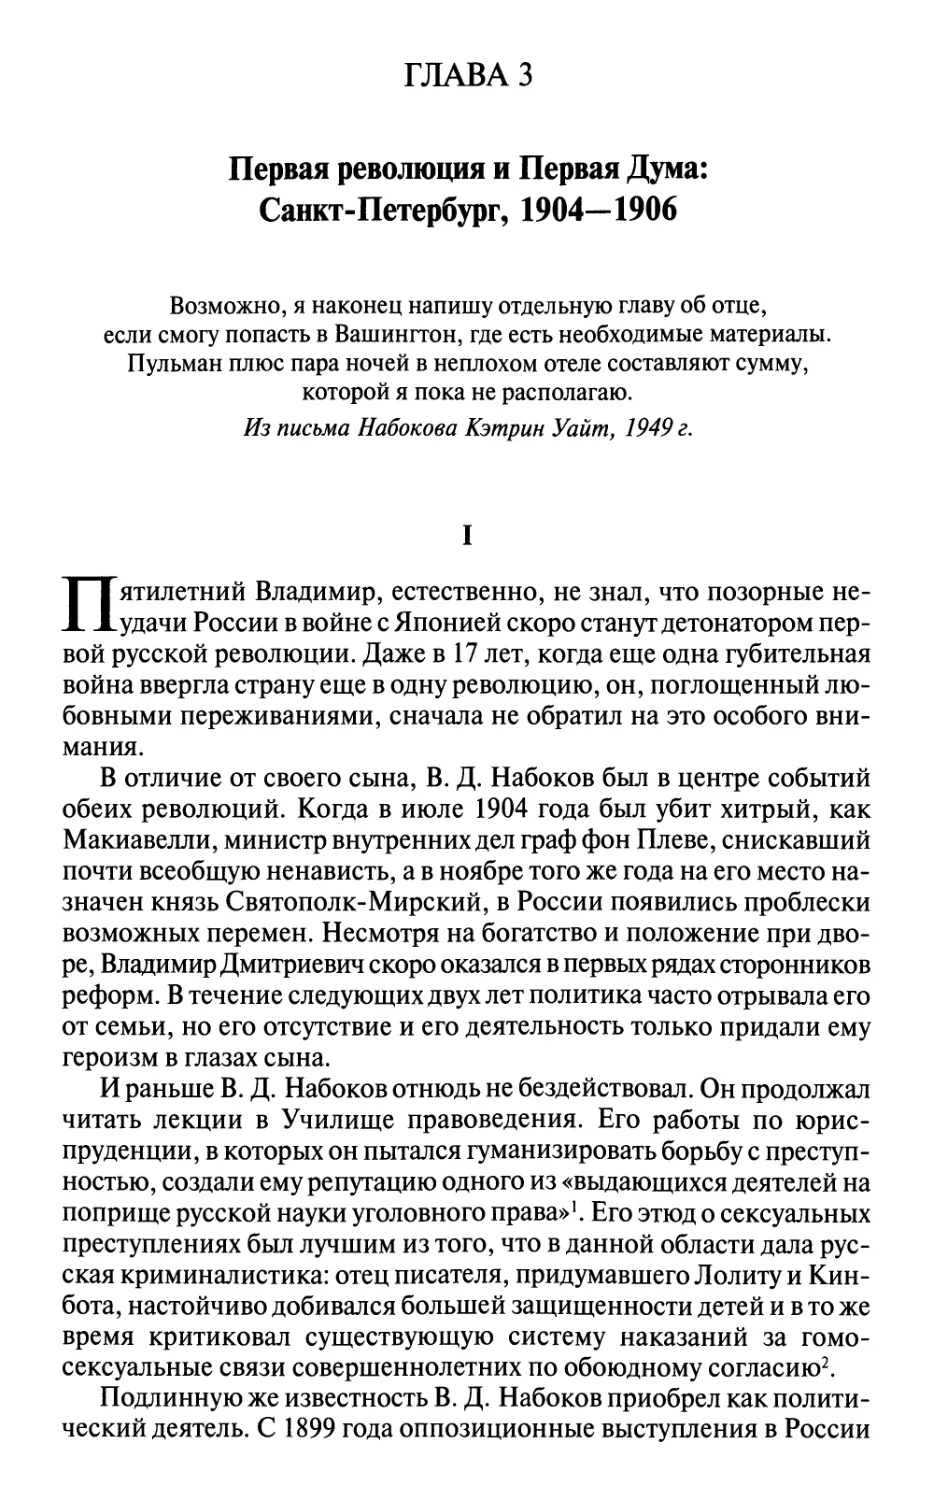 Глава 3. ПЕРВАЯ РЕВОЛЮЦИЯ И ПЕРВАЯ ДУМА: САНКТ-ПЕТЕРБУРГ, 1904-1906